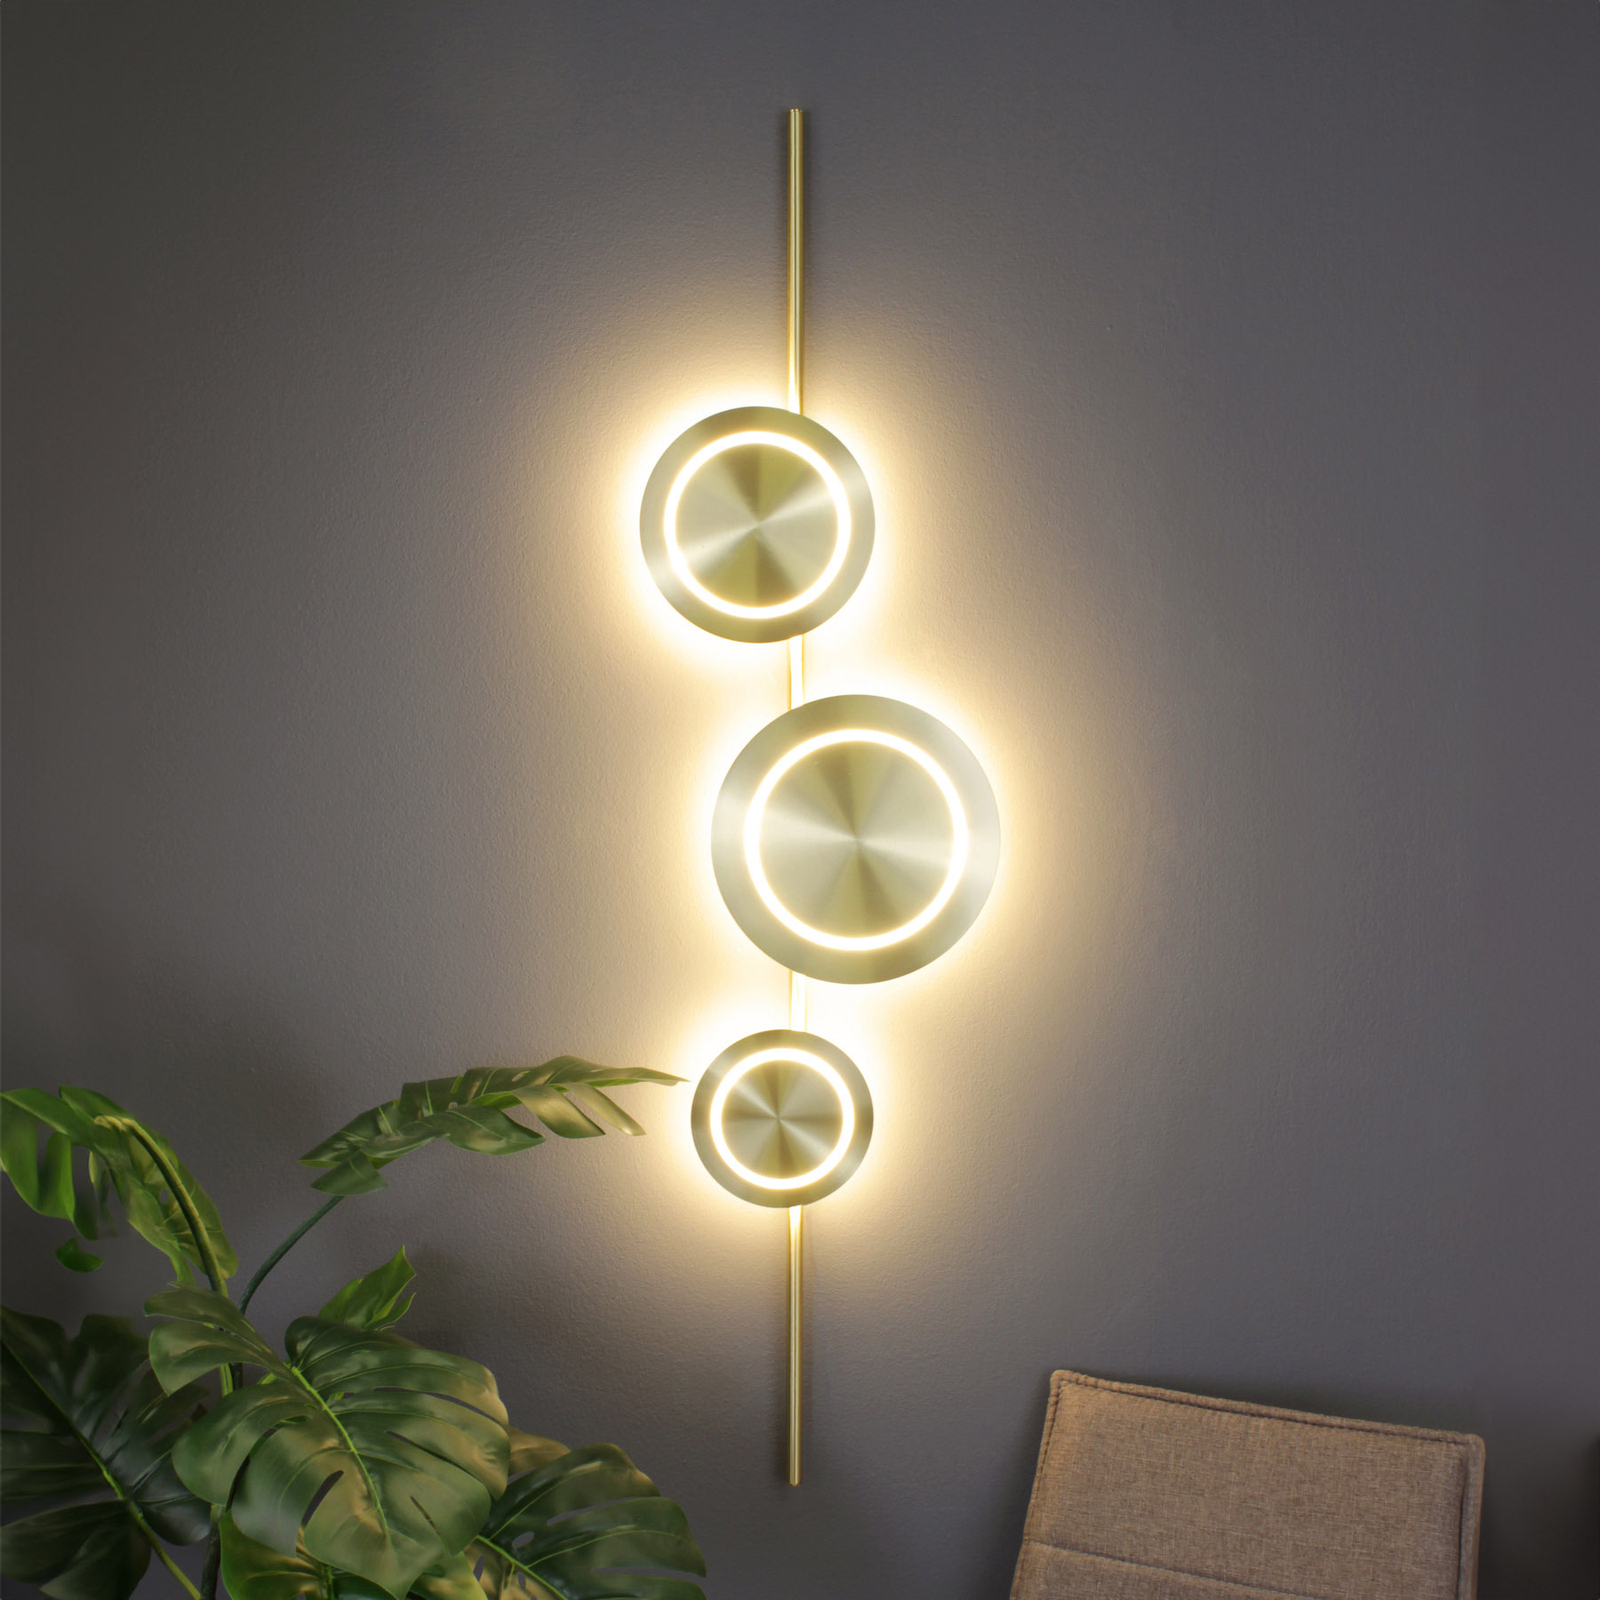 LED nástěnné svítidlo Planetárium, zlatá barva, výška 120 cm, 3 světla.